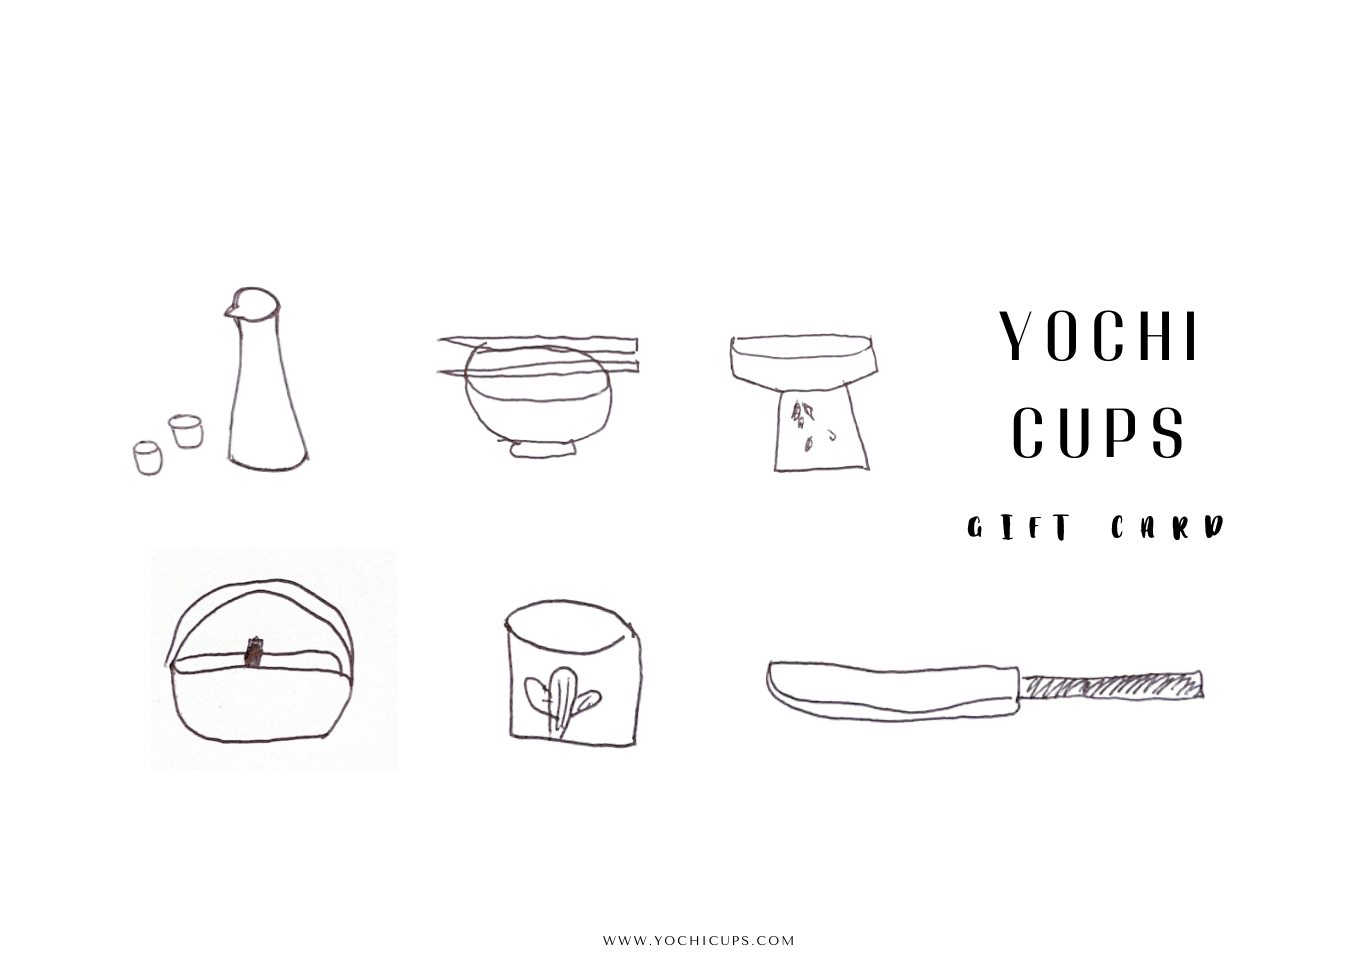 Yochi Cups Gift Card